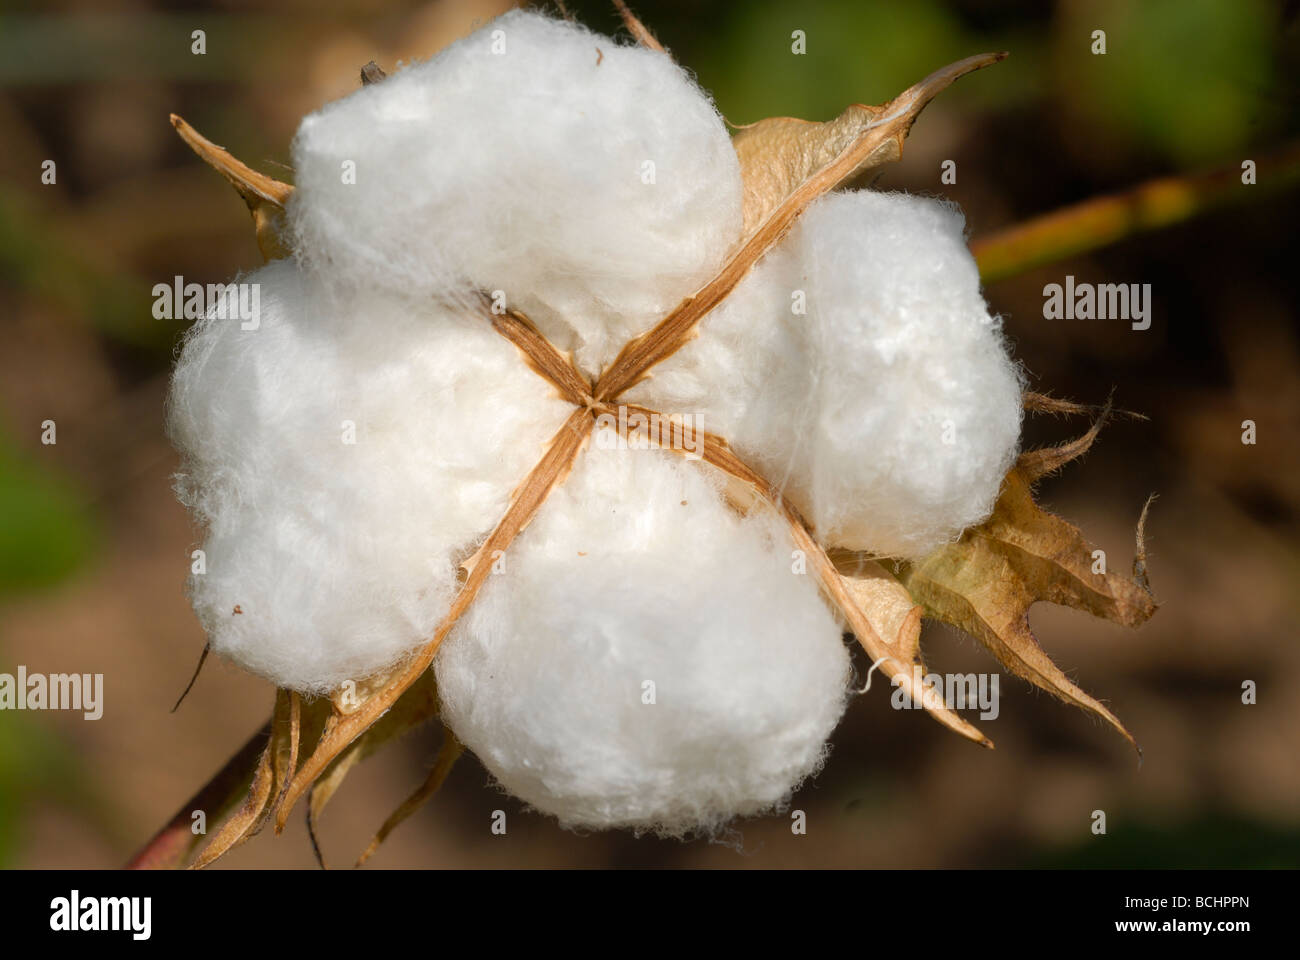 Afrique de l'Ouest, le Mali, une plante de coton , coton , mûrissent boll formation avec fibre blanche Banque D'Images